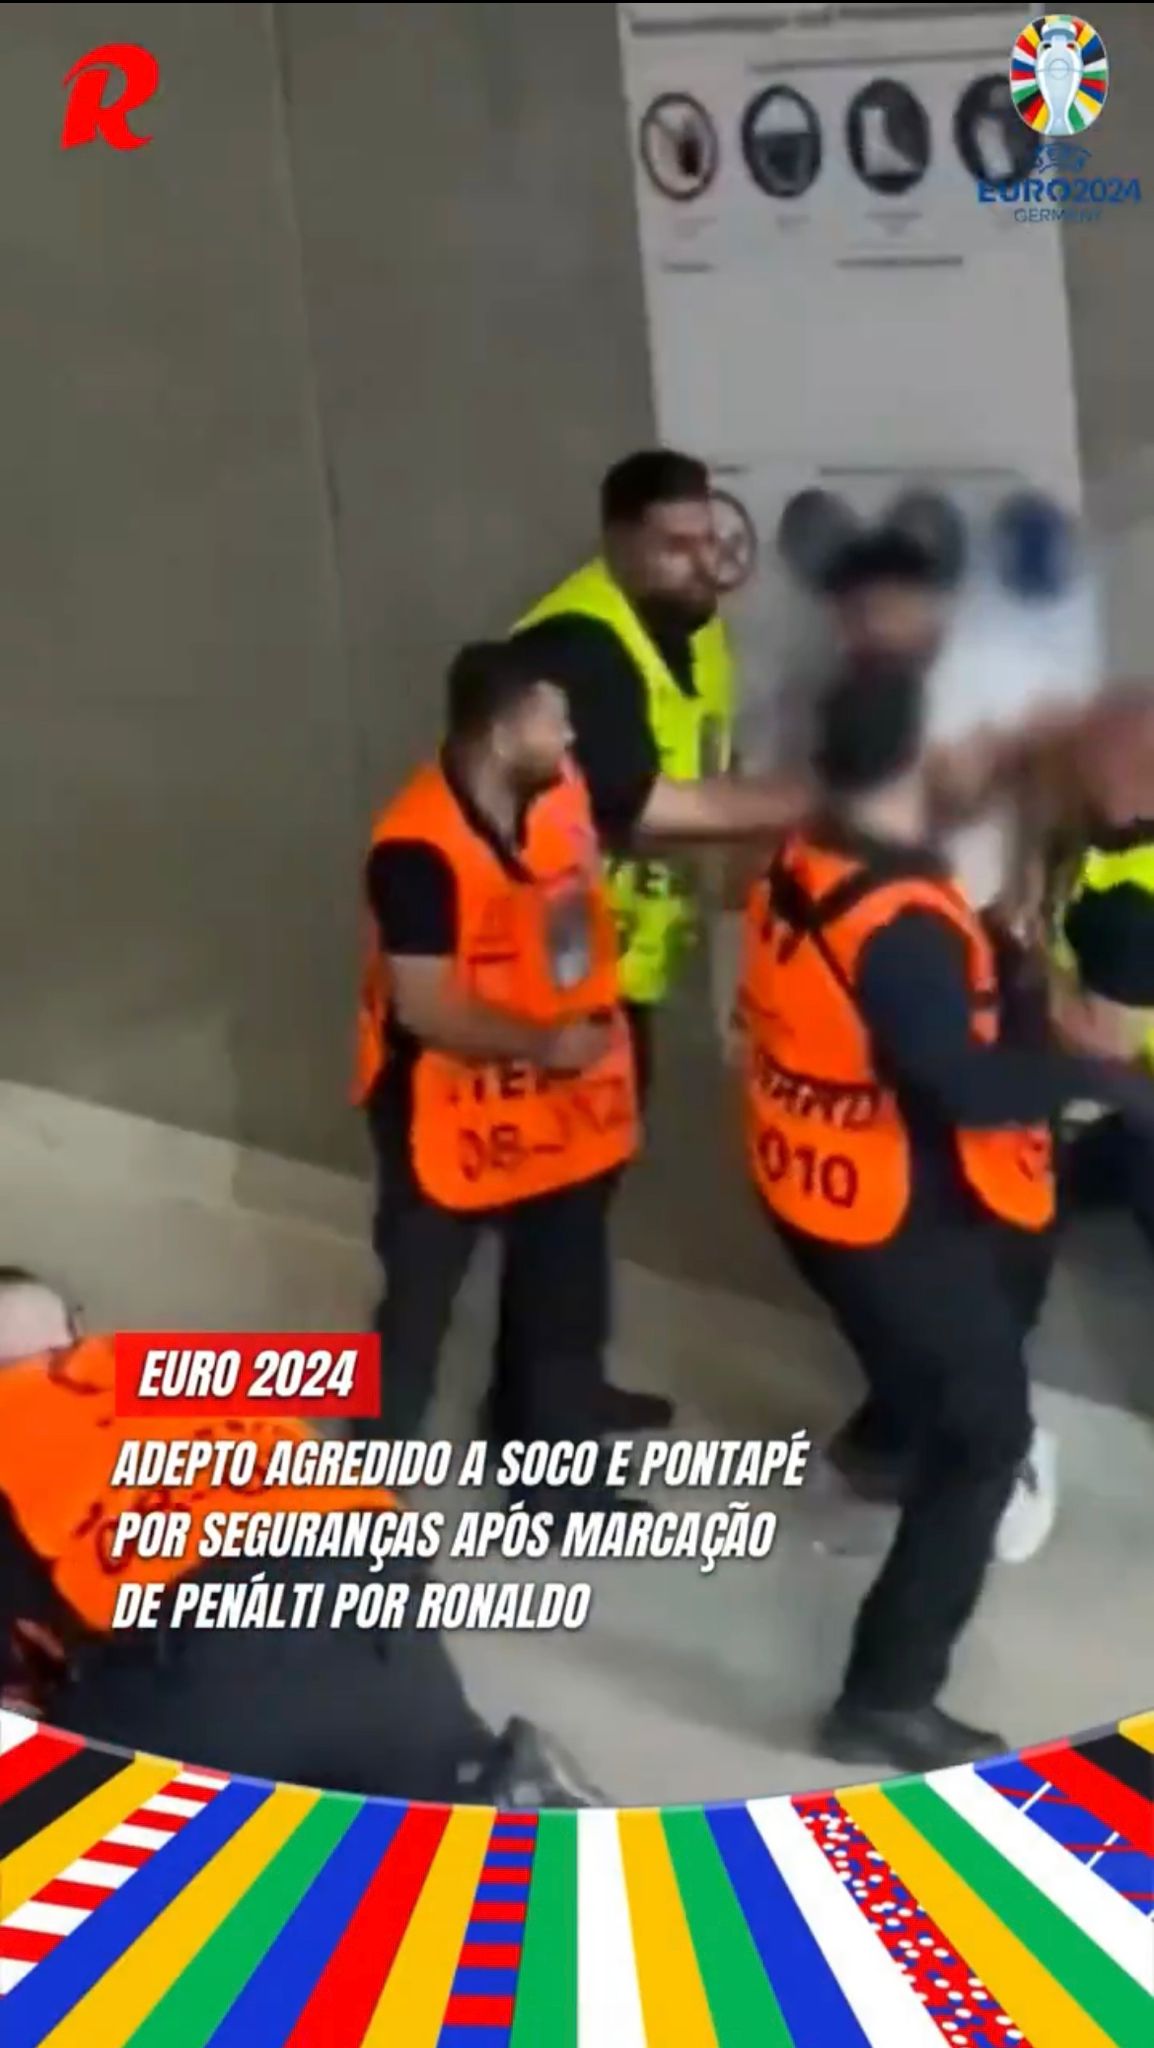 Euro2024, due tifosi aggrediti dagli steward a margine di Portogallo-Slovenia (VIDEO)